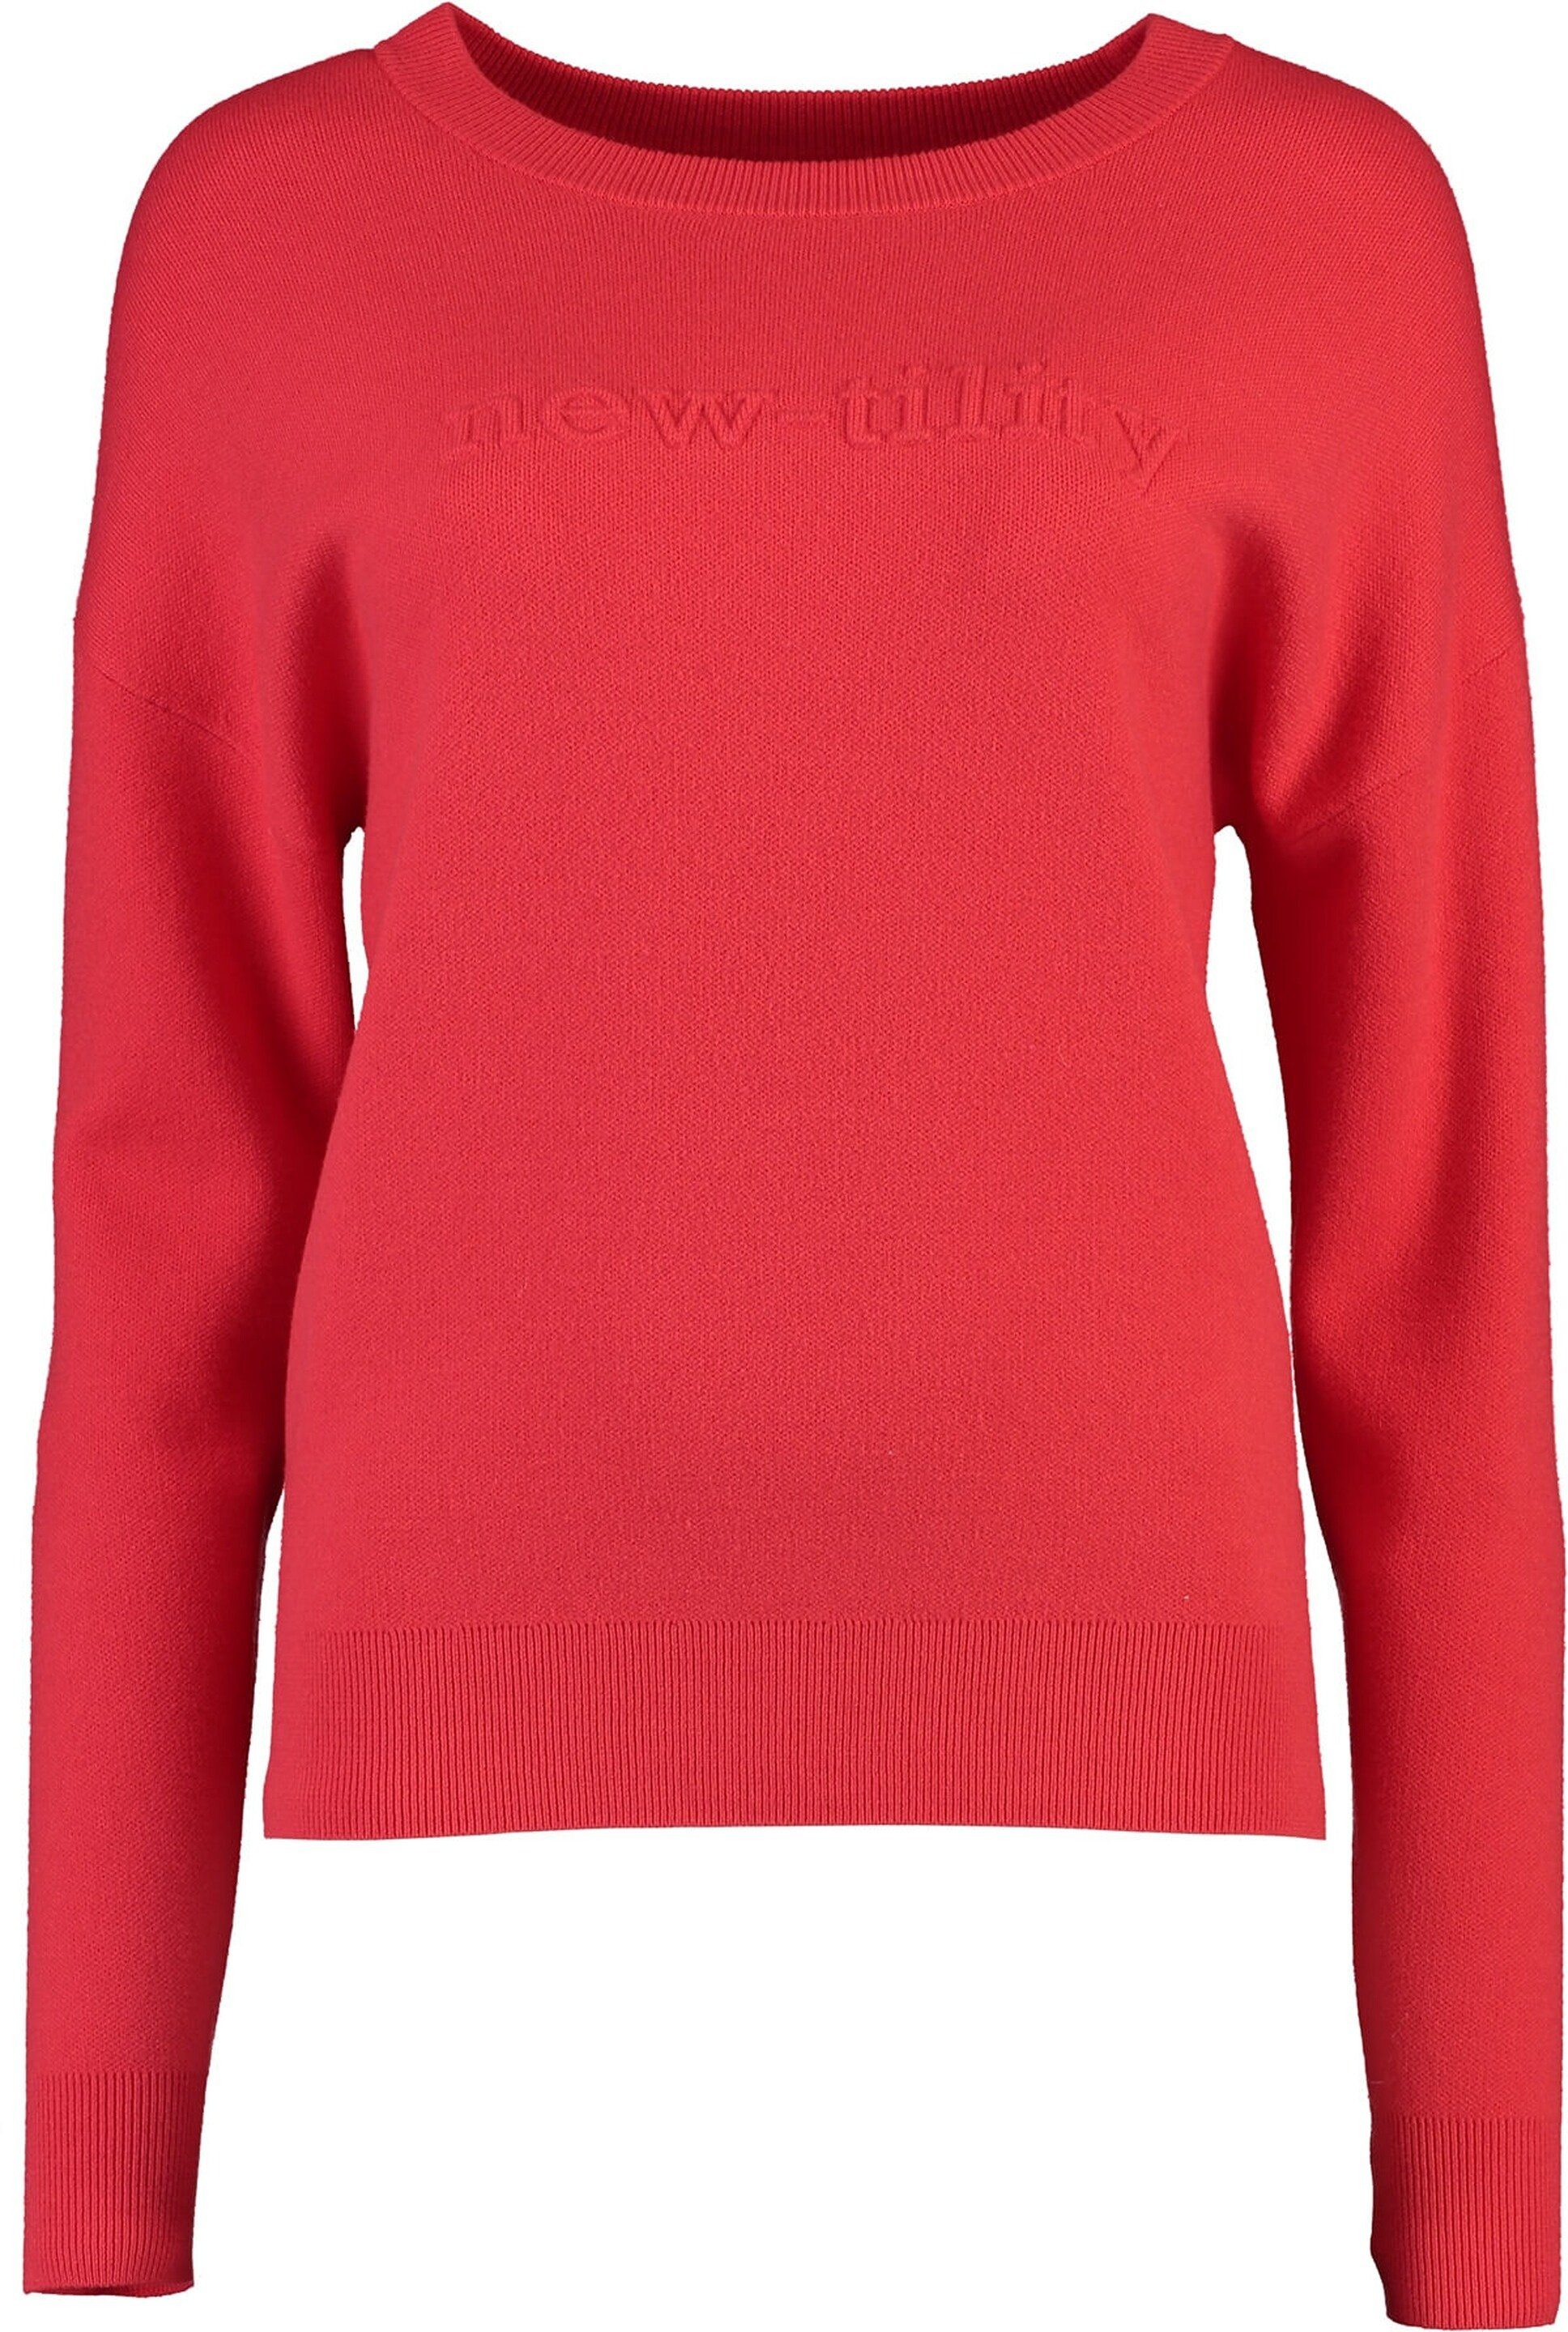 Brax В'язані светри BRAX Stricksweater Liz orange in weicher Mix-Qualität